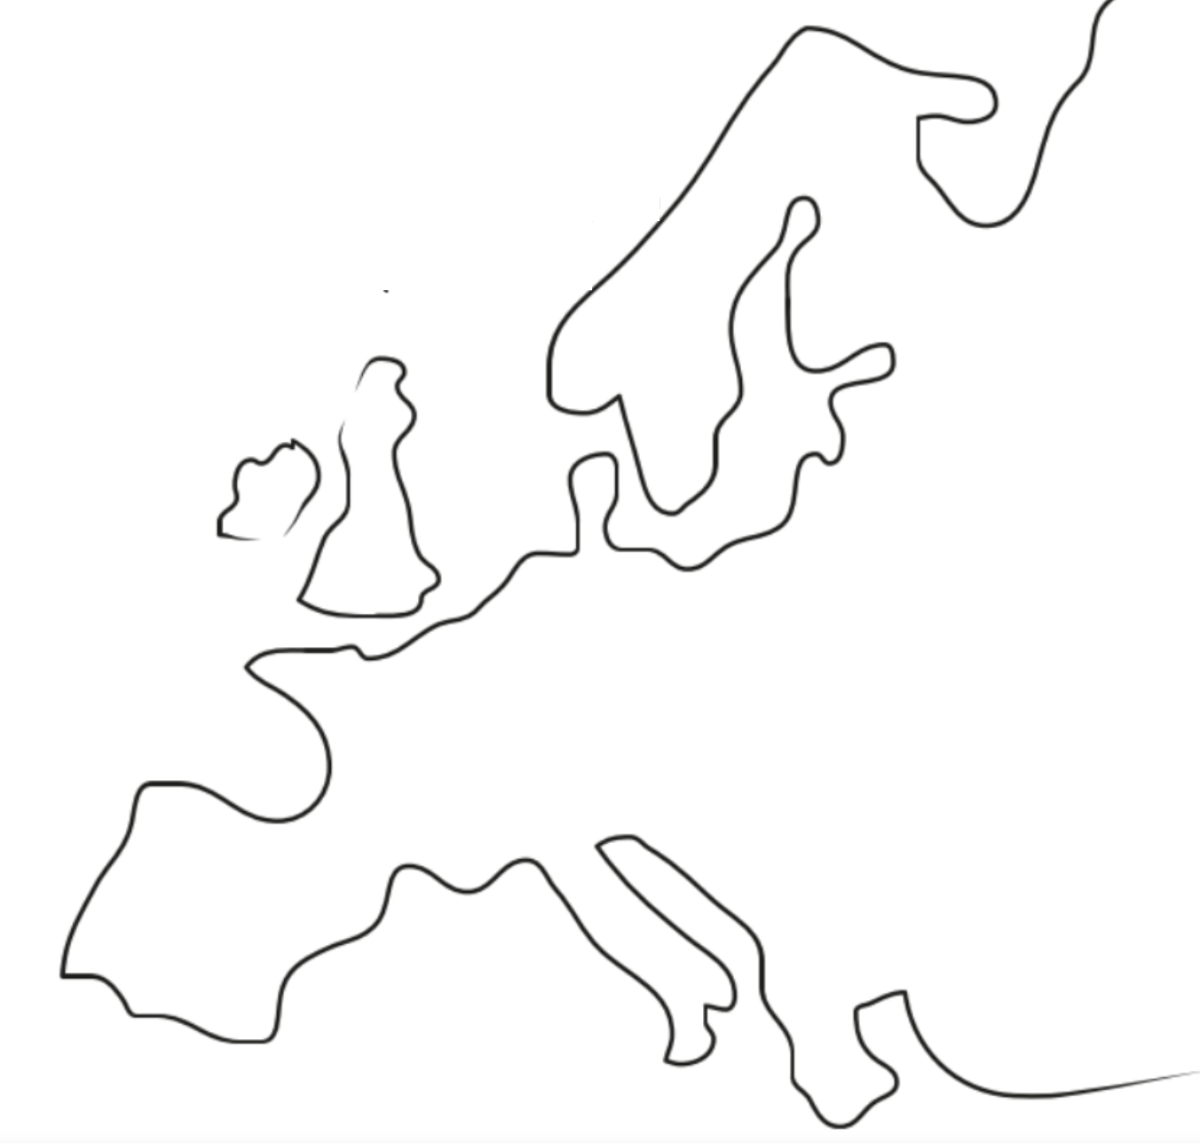 Mapa mental do continente europeu.